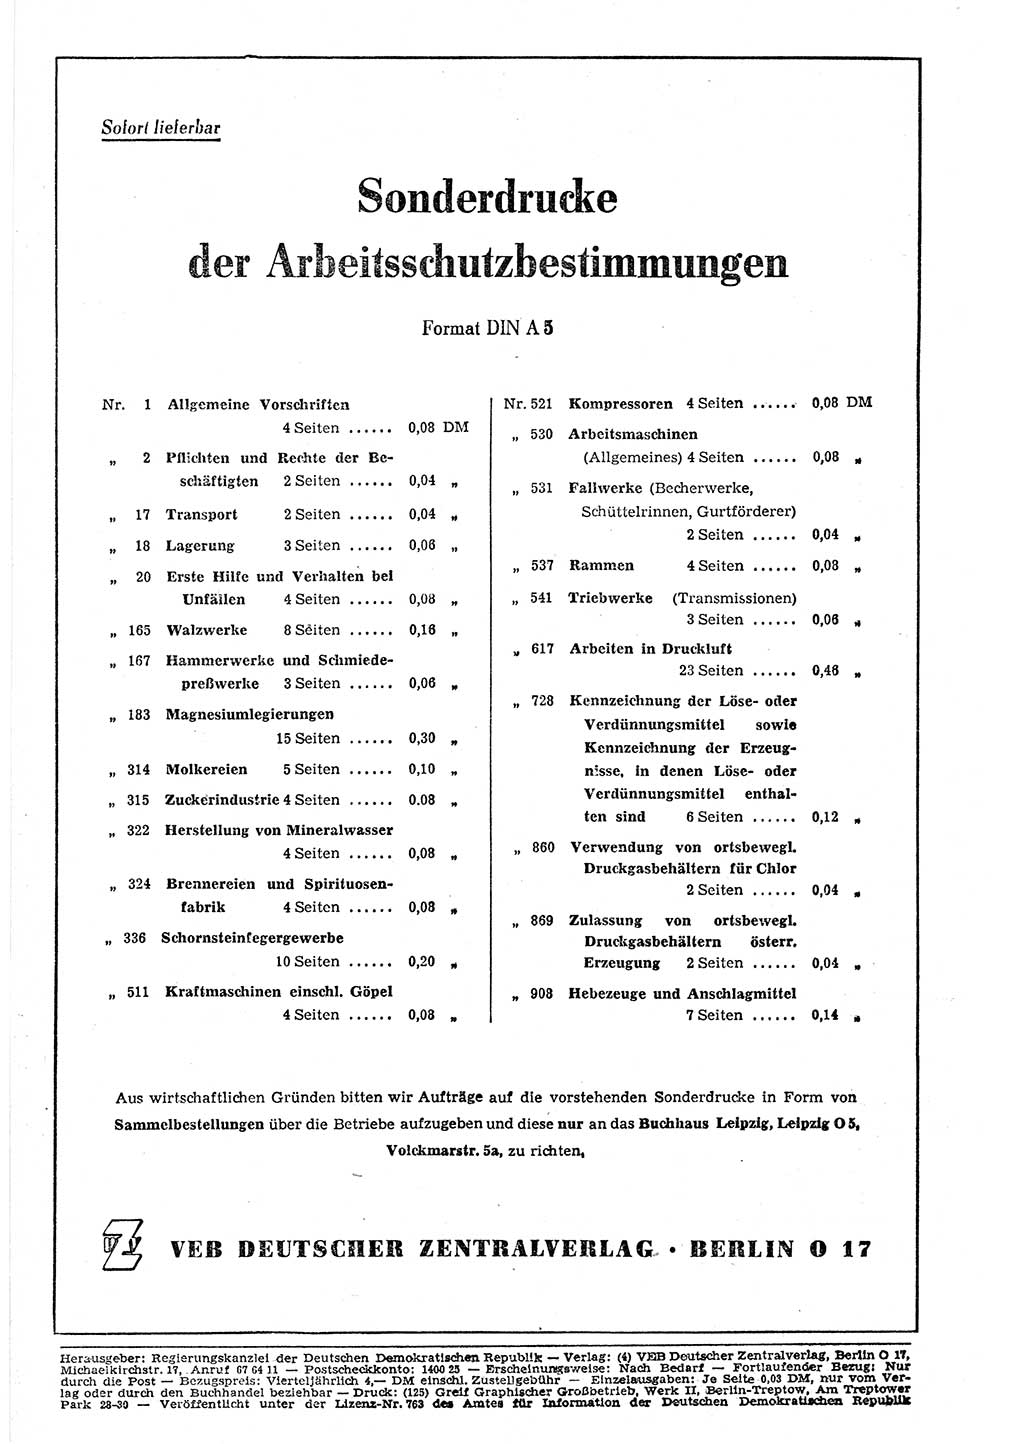 Gesetzblatt (GBl.) der Deutschen Demokratischen Republik (DDR) 1953, Seite 410 (GBl. DDR 1953, S. 410)